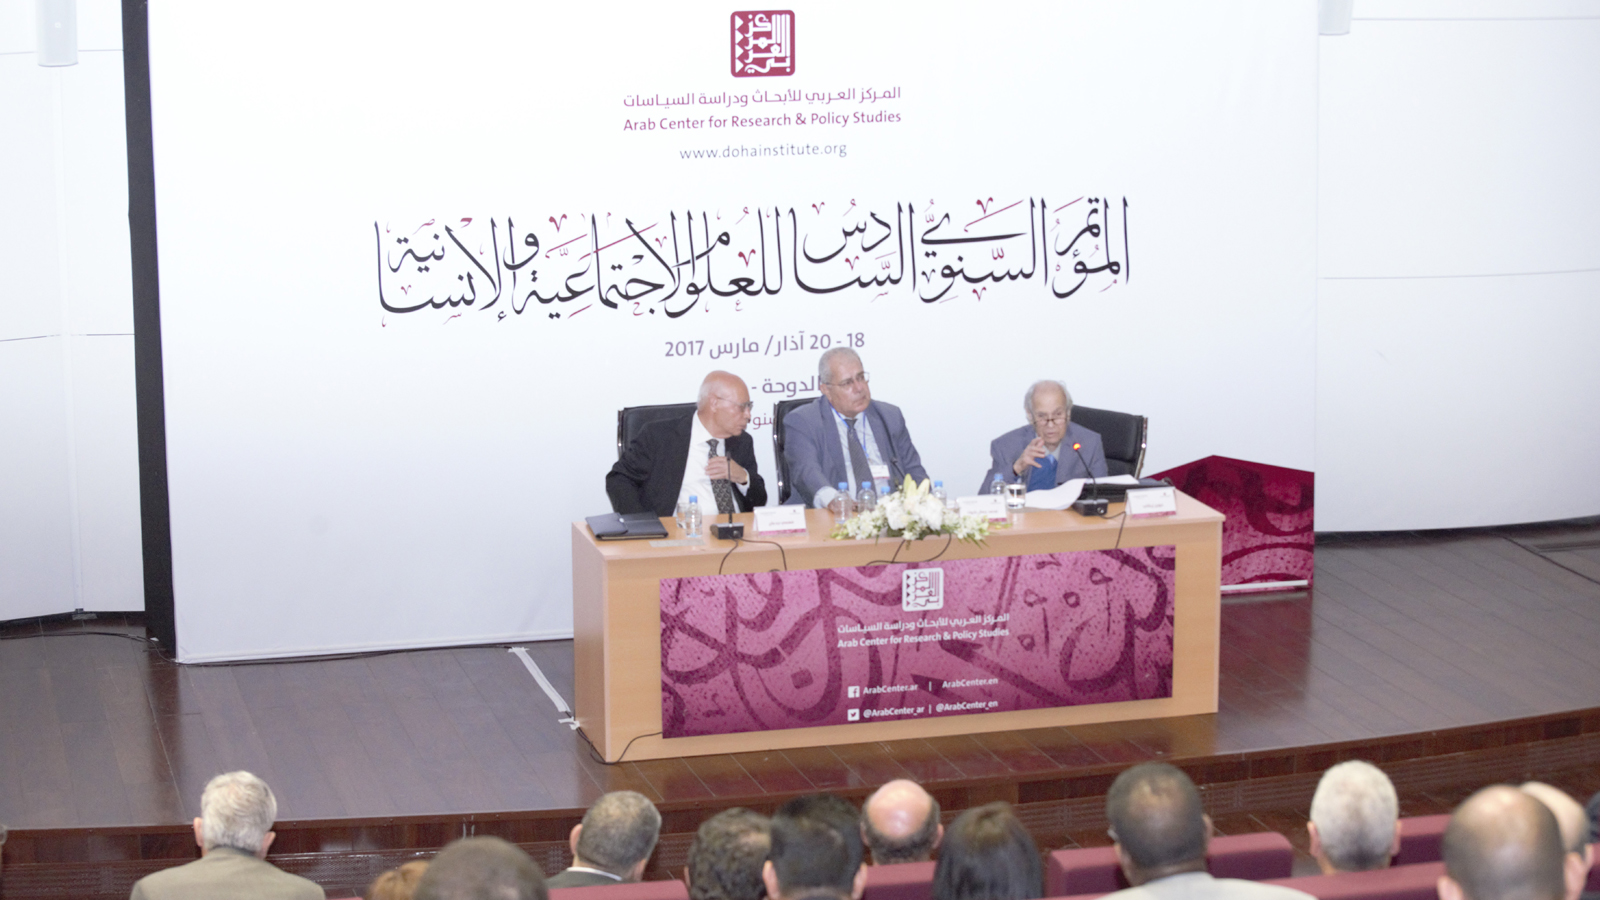 المركز العربي في مؤتمره ال6 للعلوم الاجتماعية والإنسانية:الهجرة والمستقبل